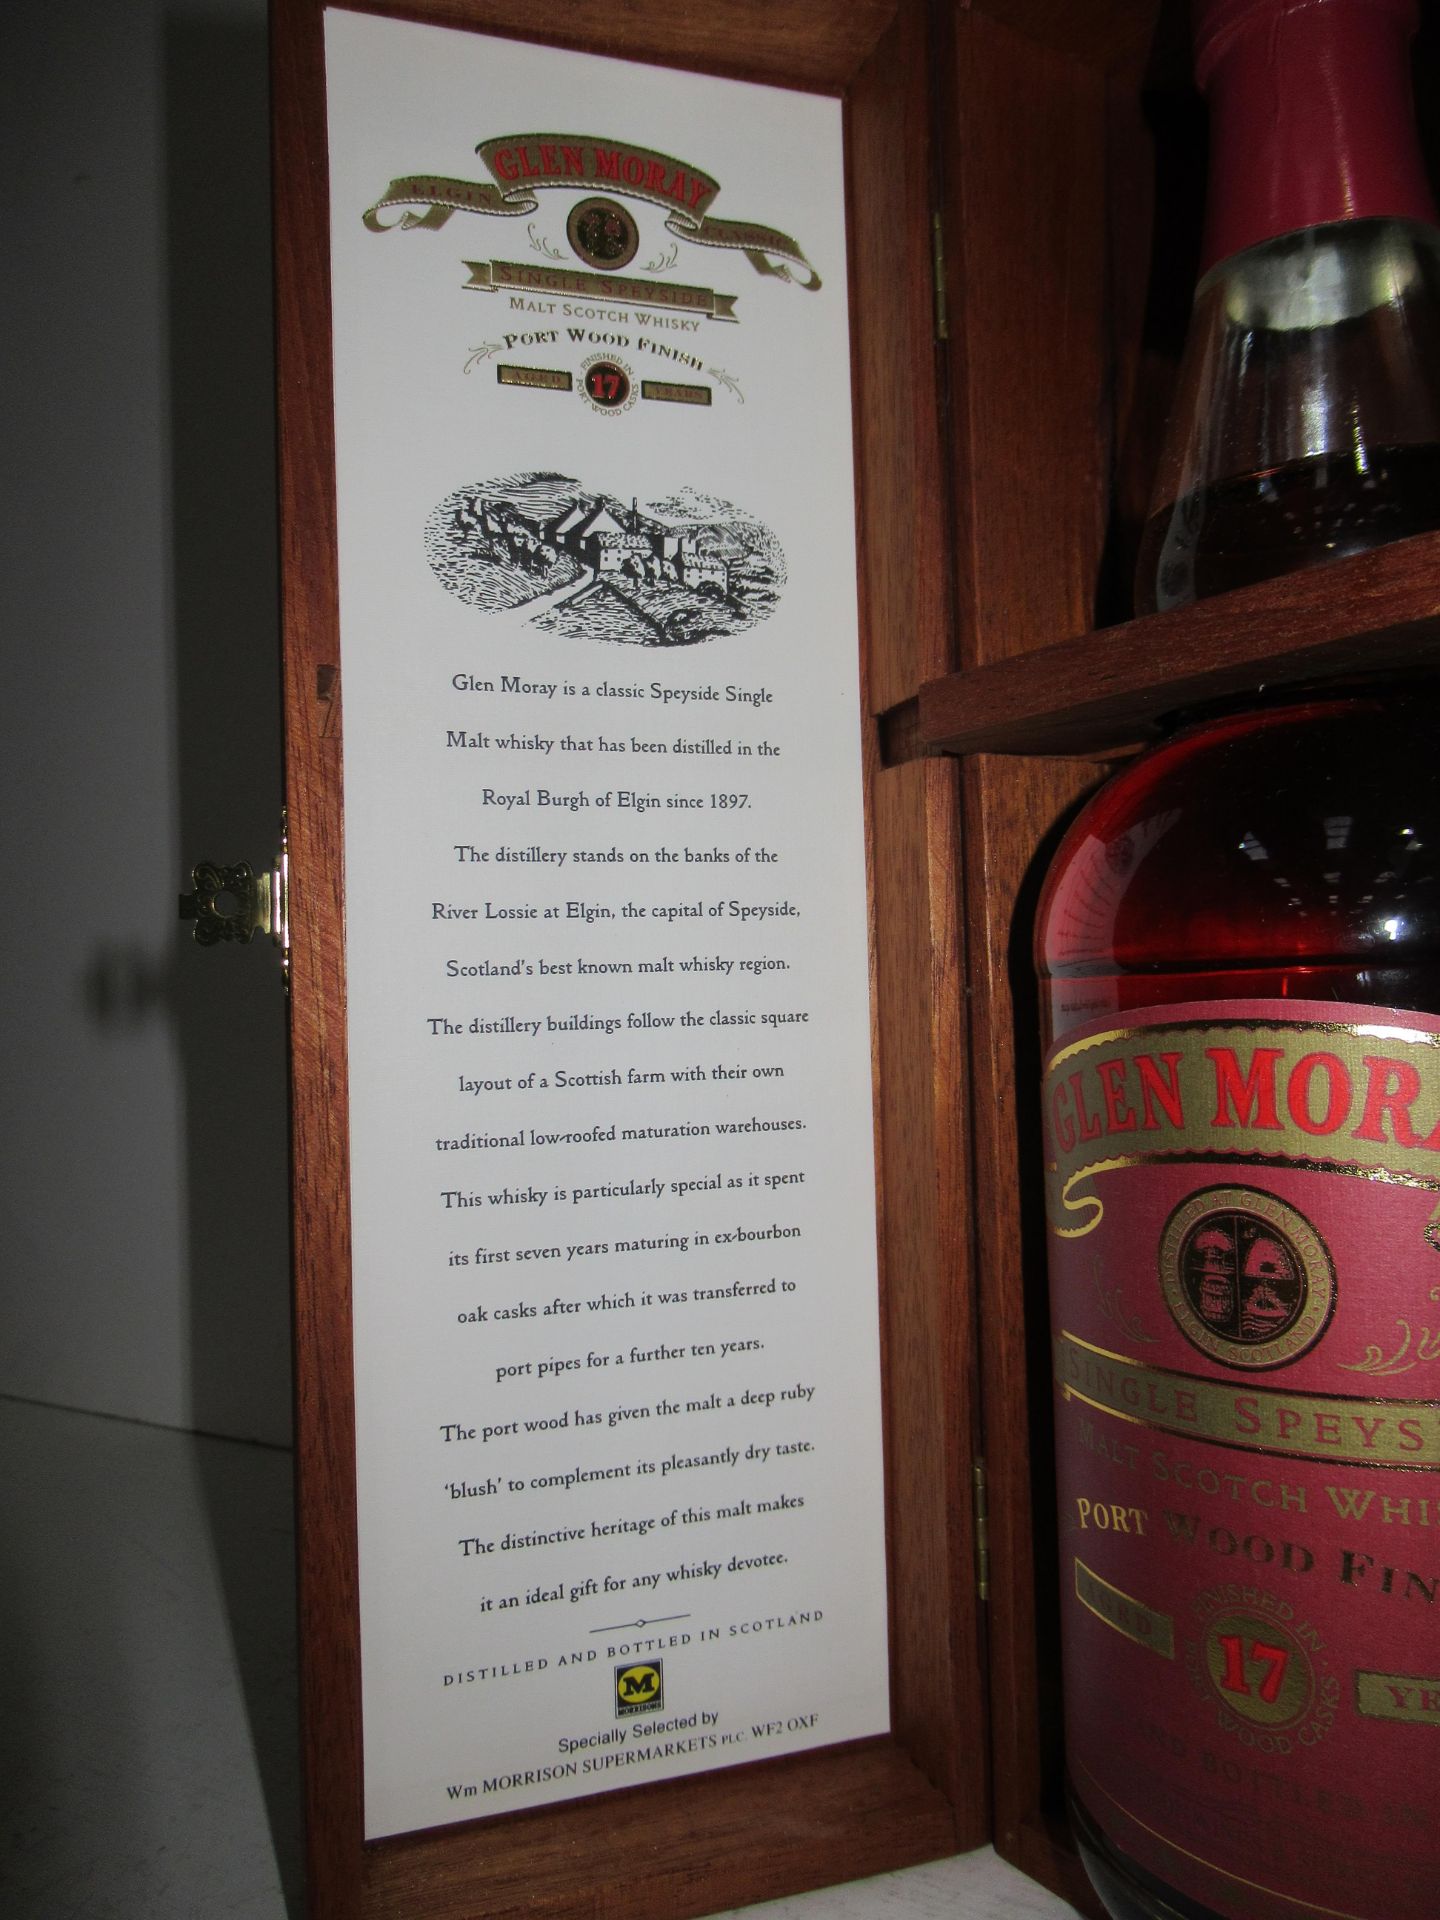 Glen Moray Single Speyside Malt Scotch Whisky - Image 4 of 7